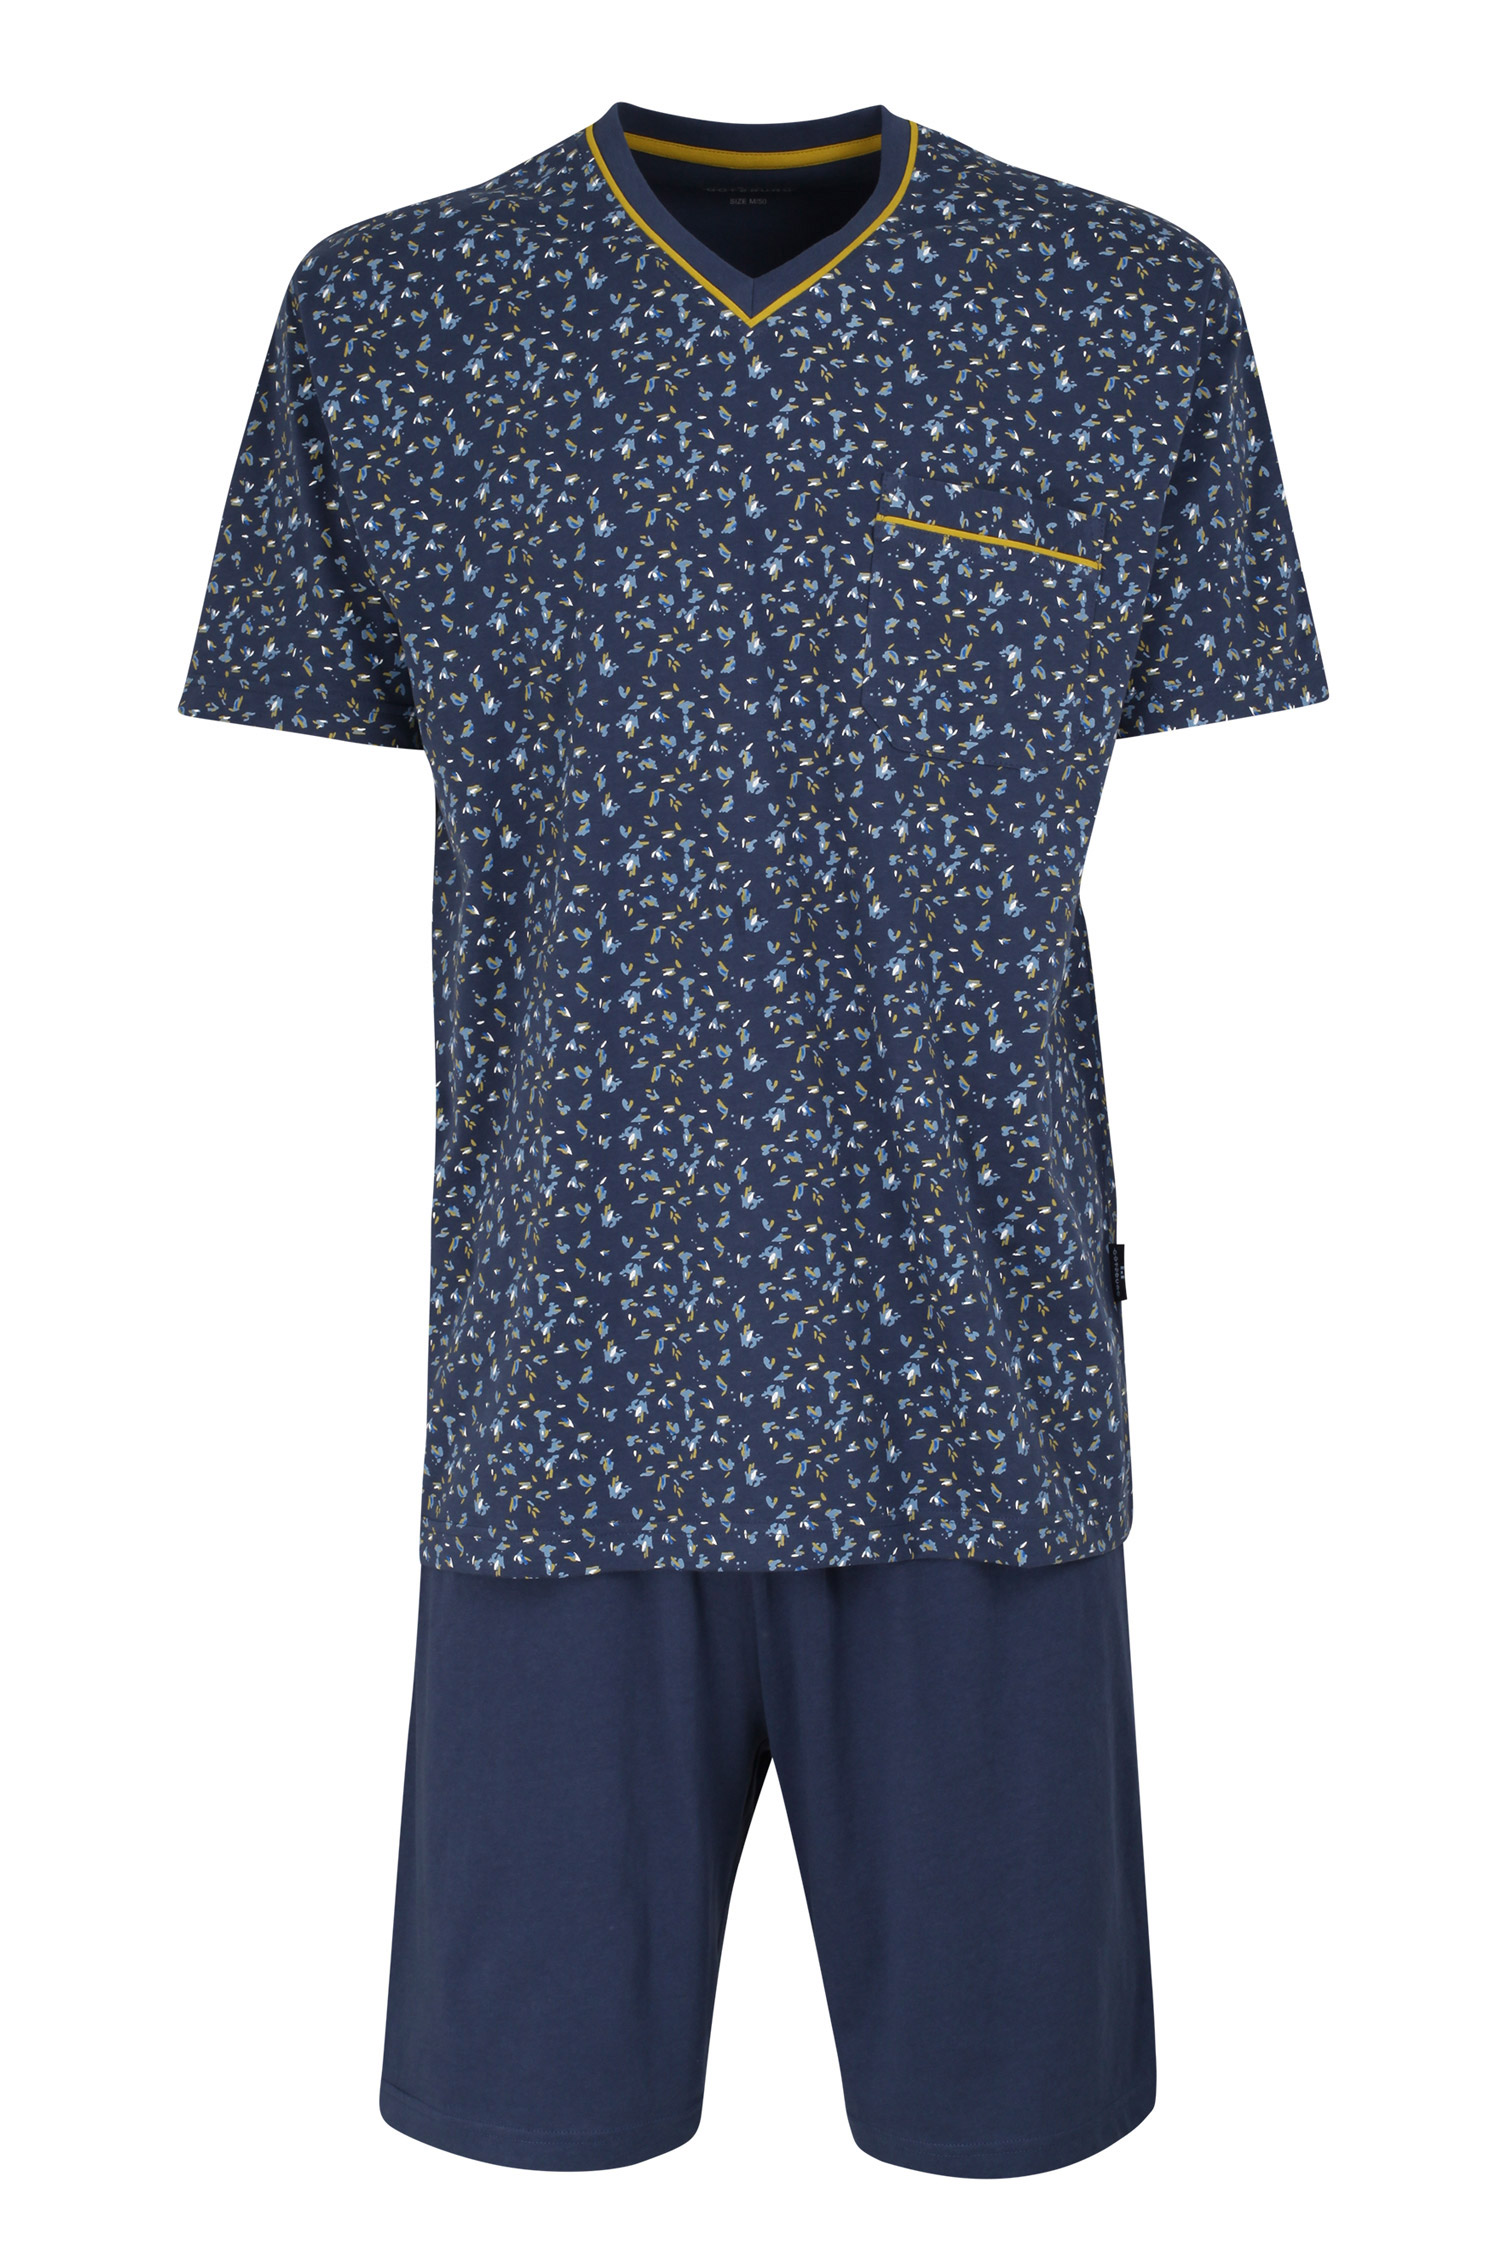 Homewear, Pijama M. Corta, 110854, NOCHE | Zoom